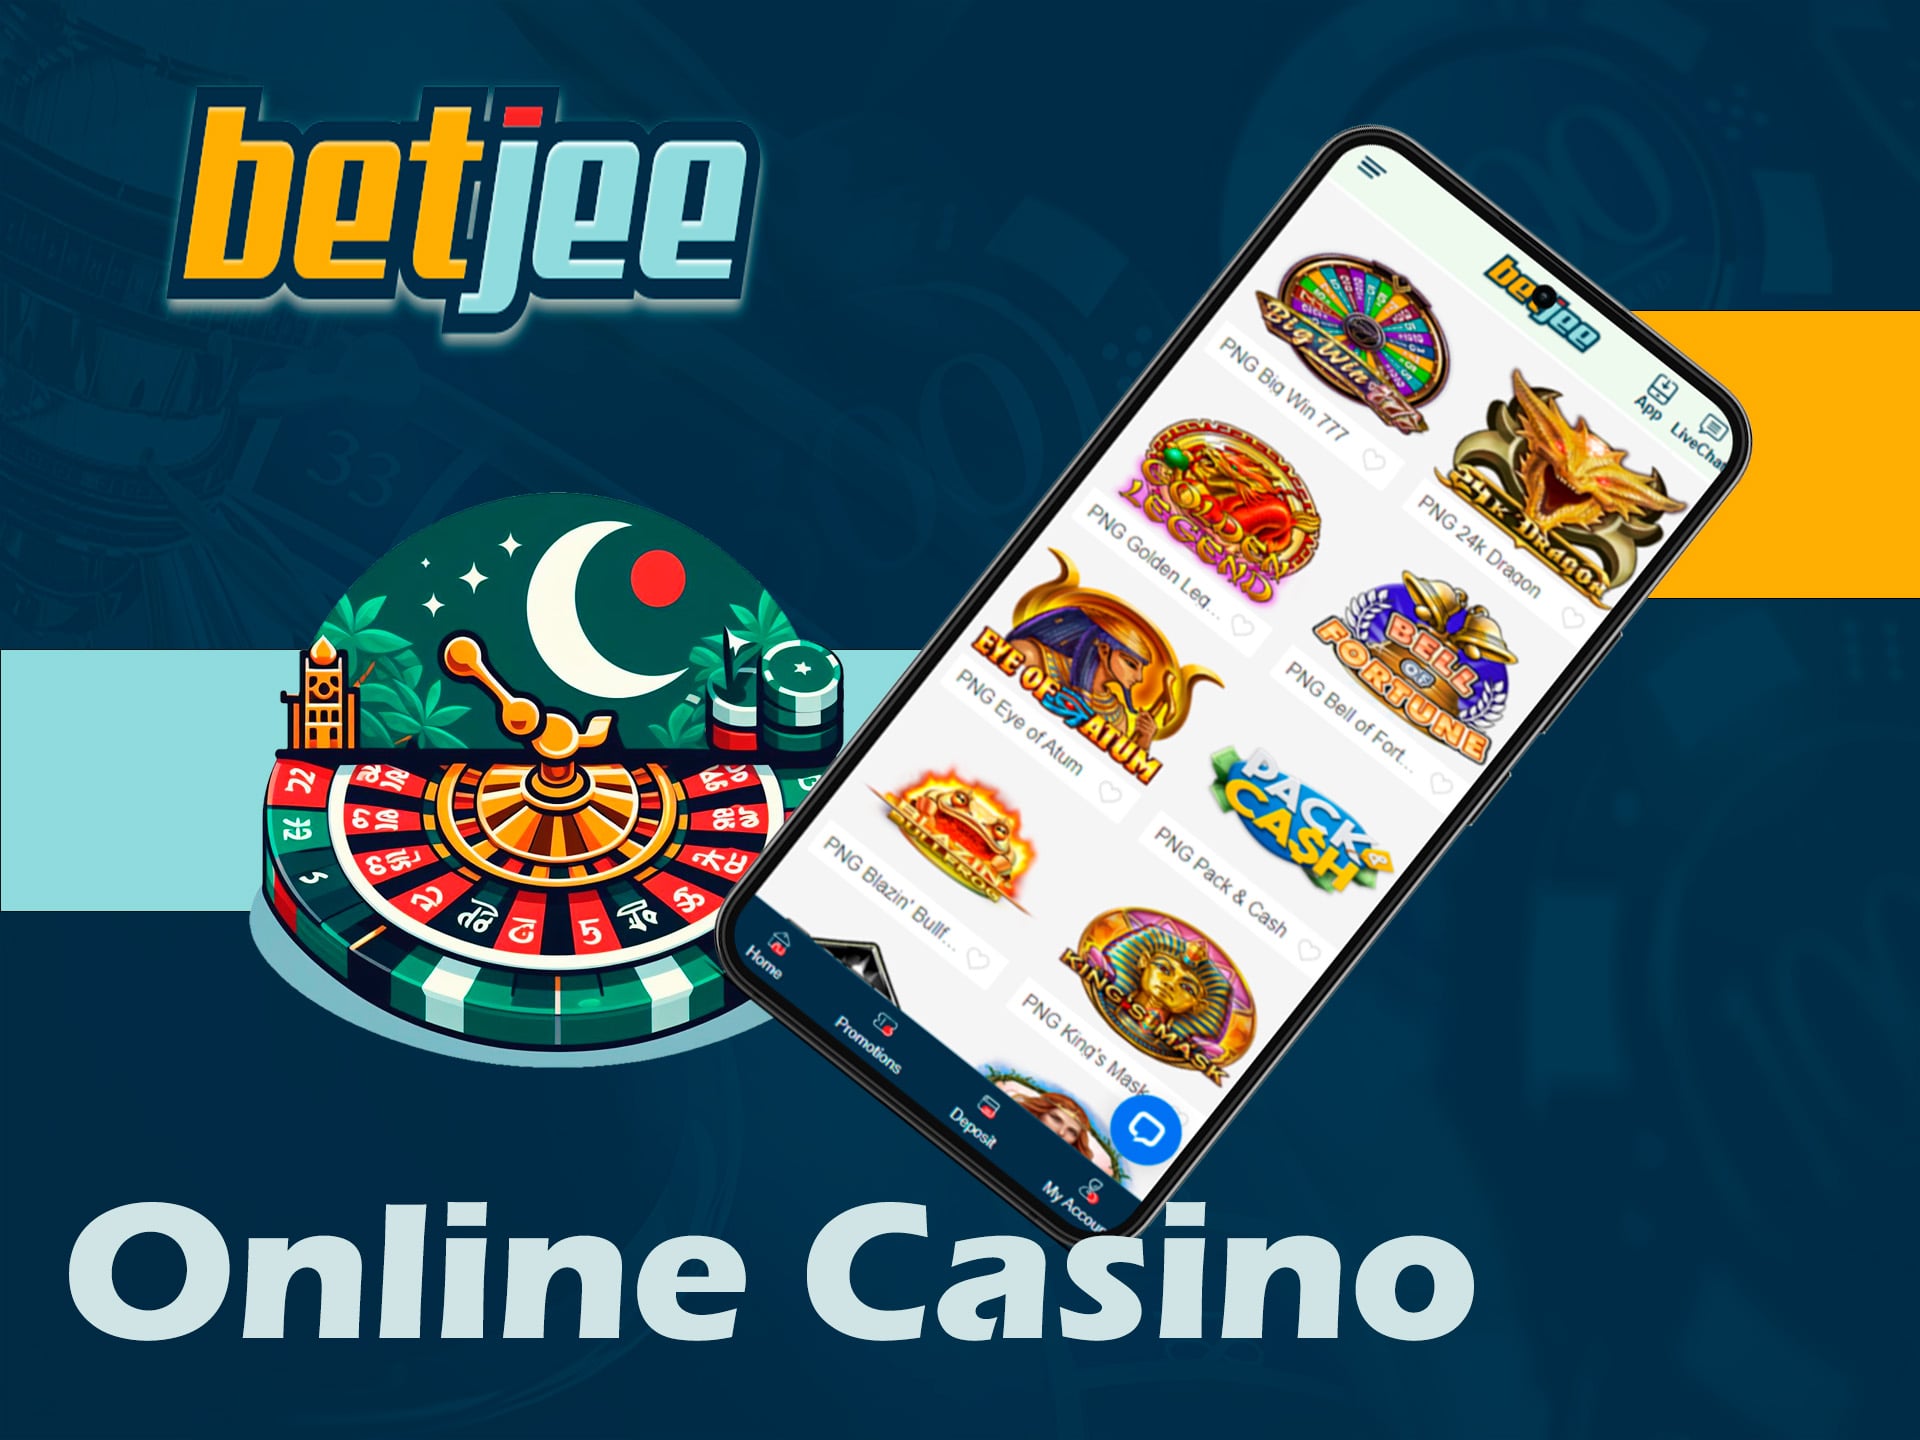 online casino in betjee application